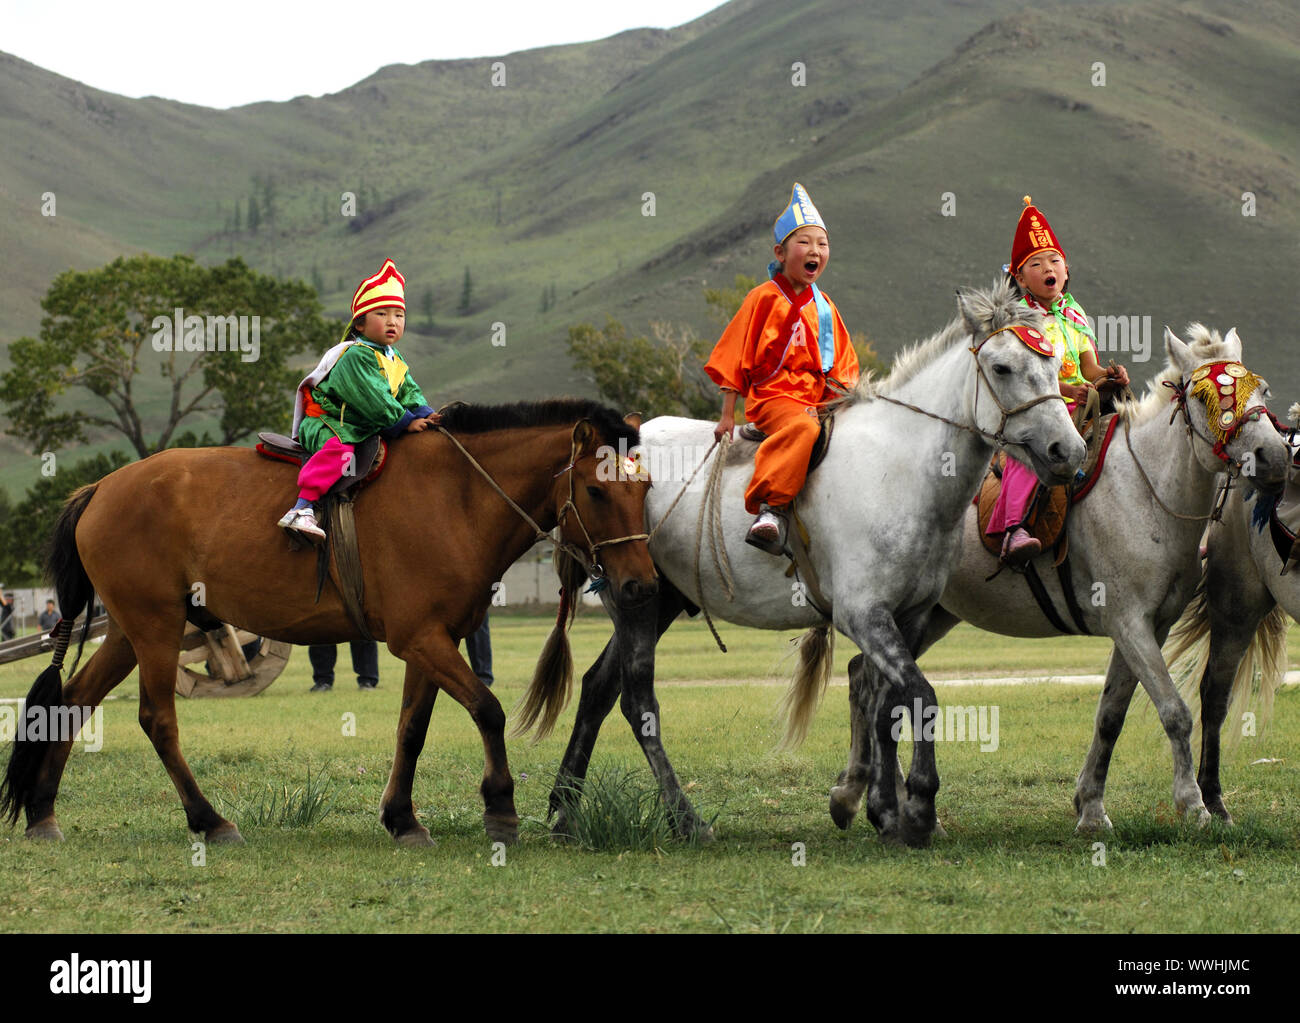 Groupe Équitation mongole Banque D'Images